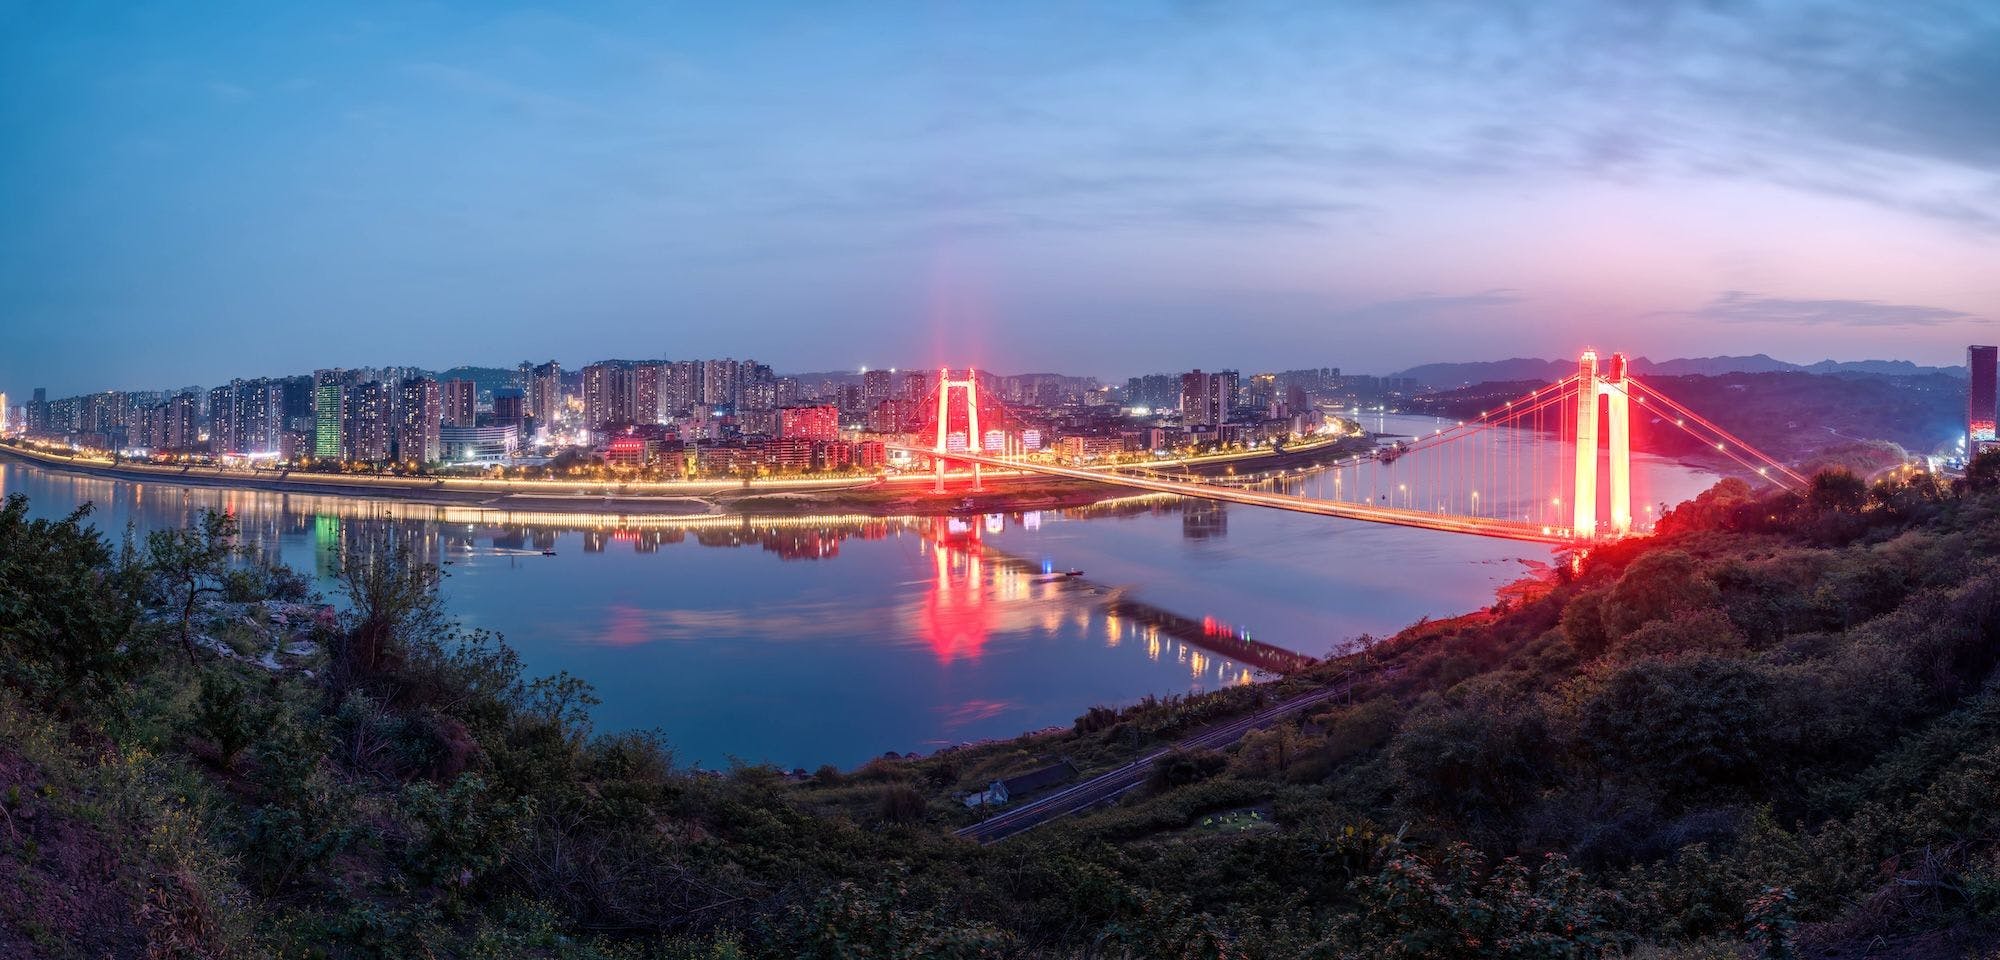 Chinesische Städte, größte Städte der Welt, Allgemeine Fakten: Stadtarchitektur in Chongqing - Abschnitt der U-Bahn am Jangtse-Fluss